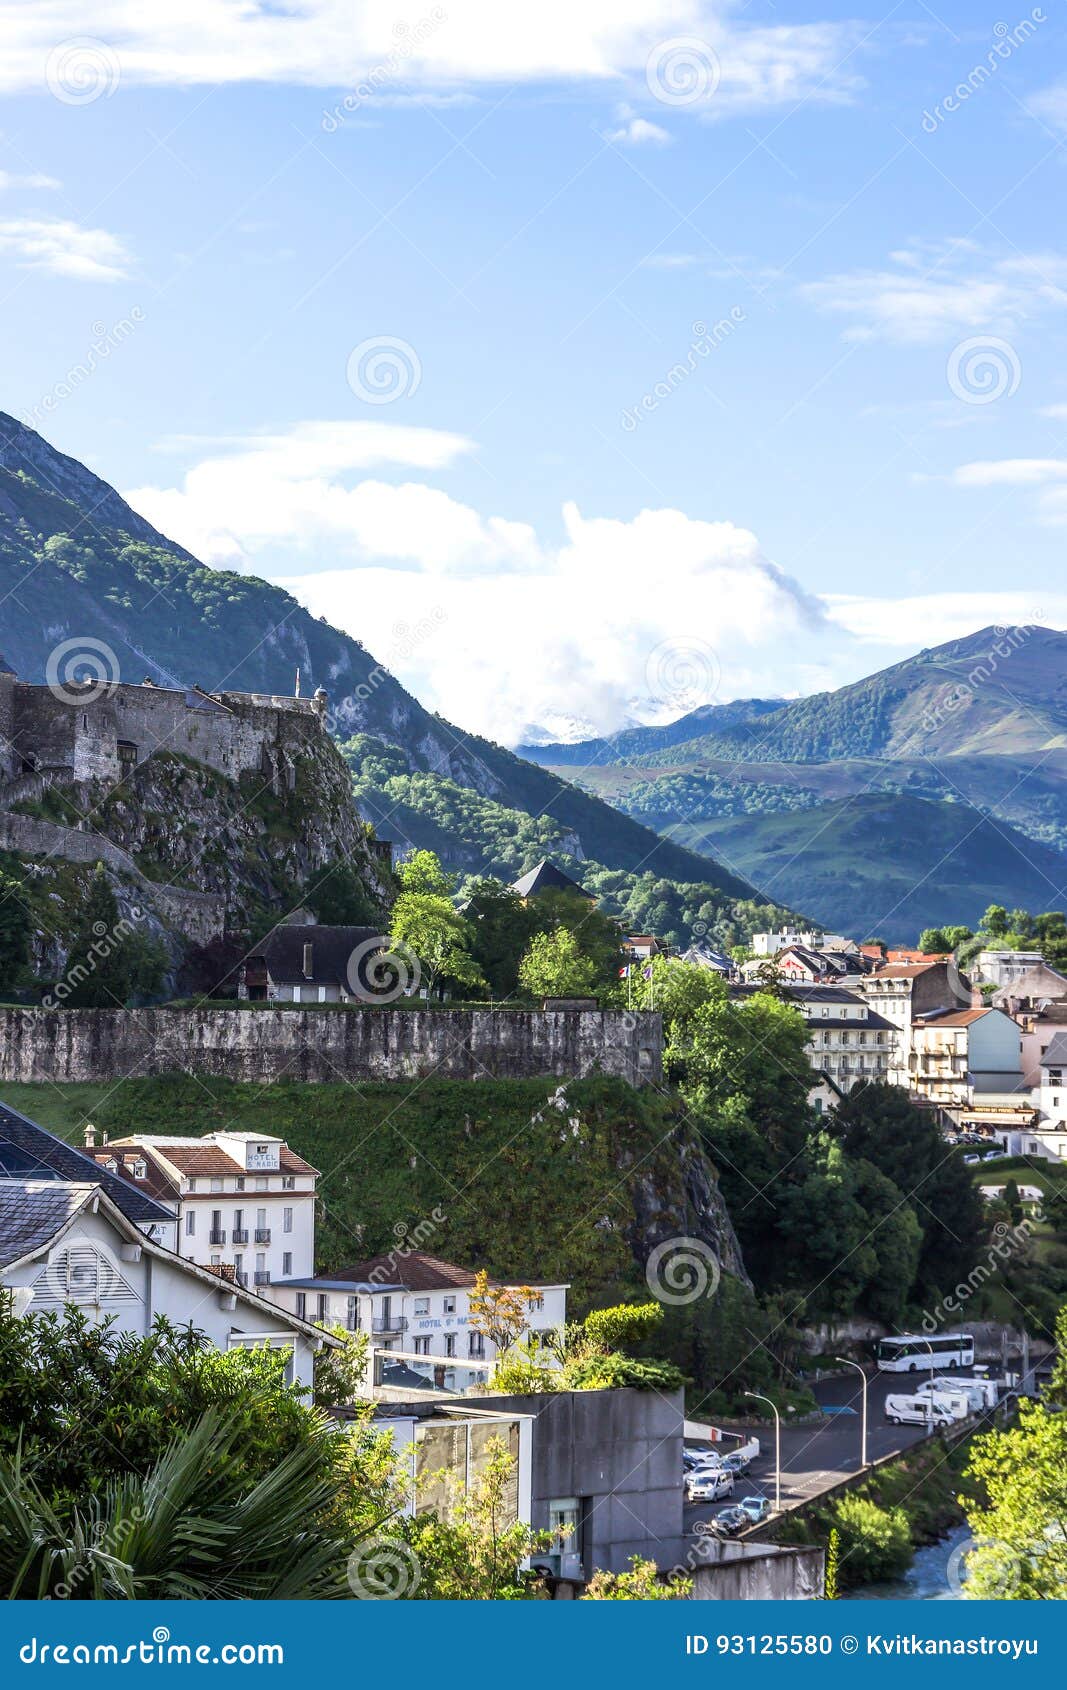 Beautiful Nature Landscape. Mountains Pyrenees. Lourdes France ...